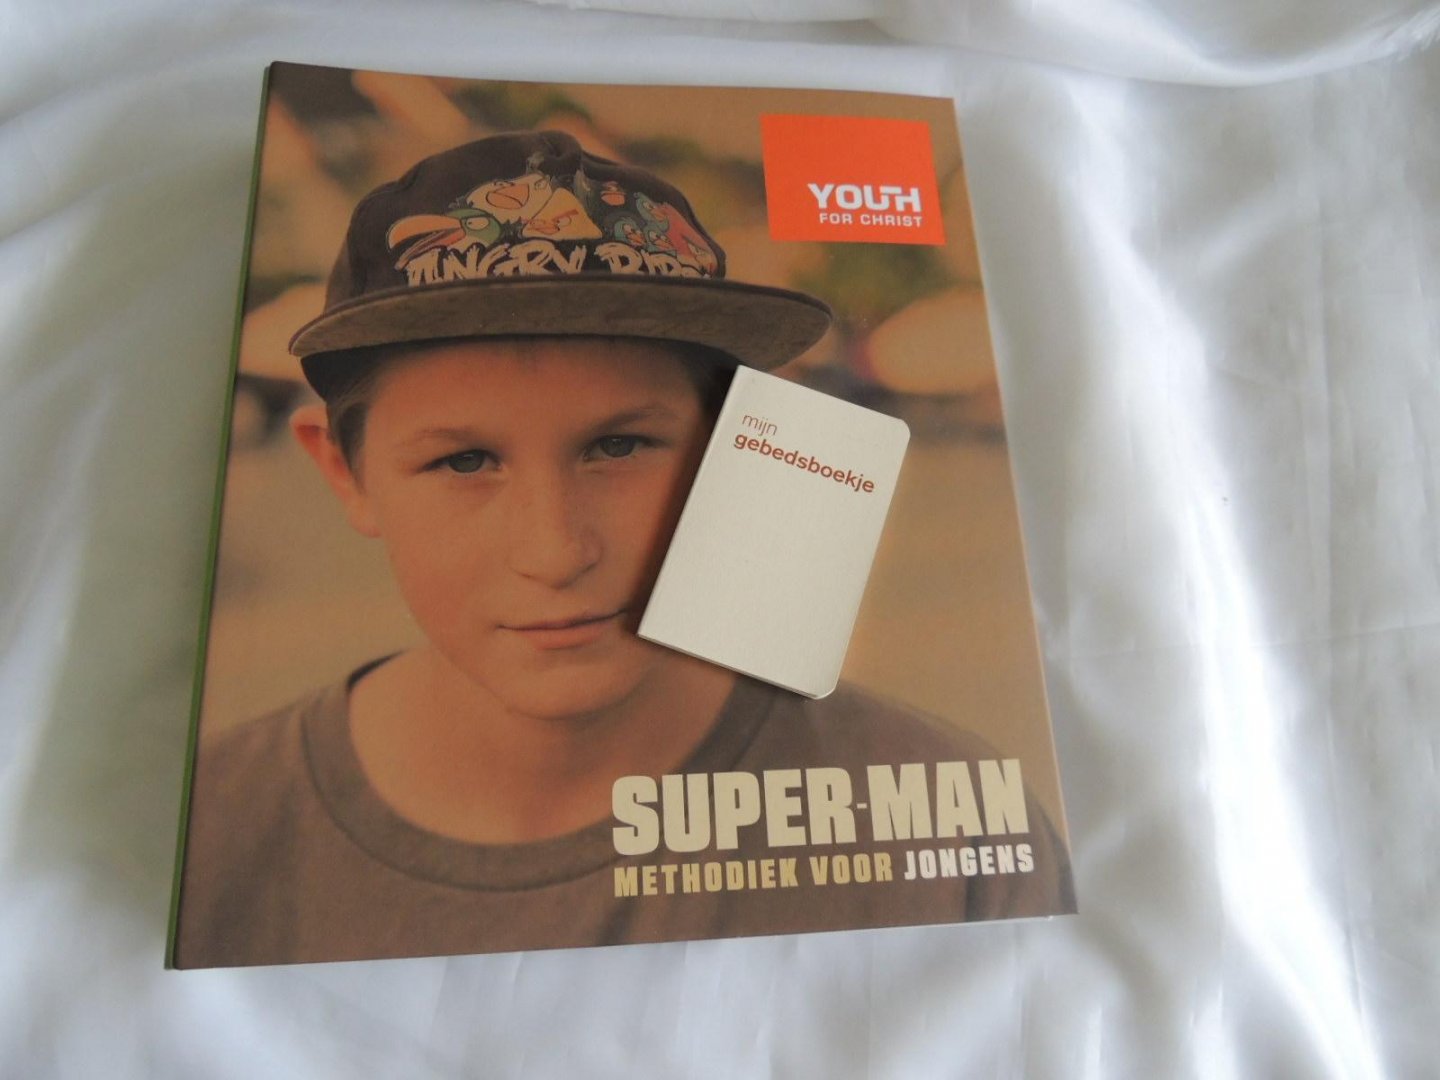 Koorevaar Wouter - SUPER-MAN methodiek voor jongens . superman - Methodisch Groepsprogramma voor relationeel werken met jongeren van  11 - 14 jaar.